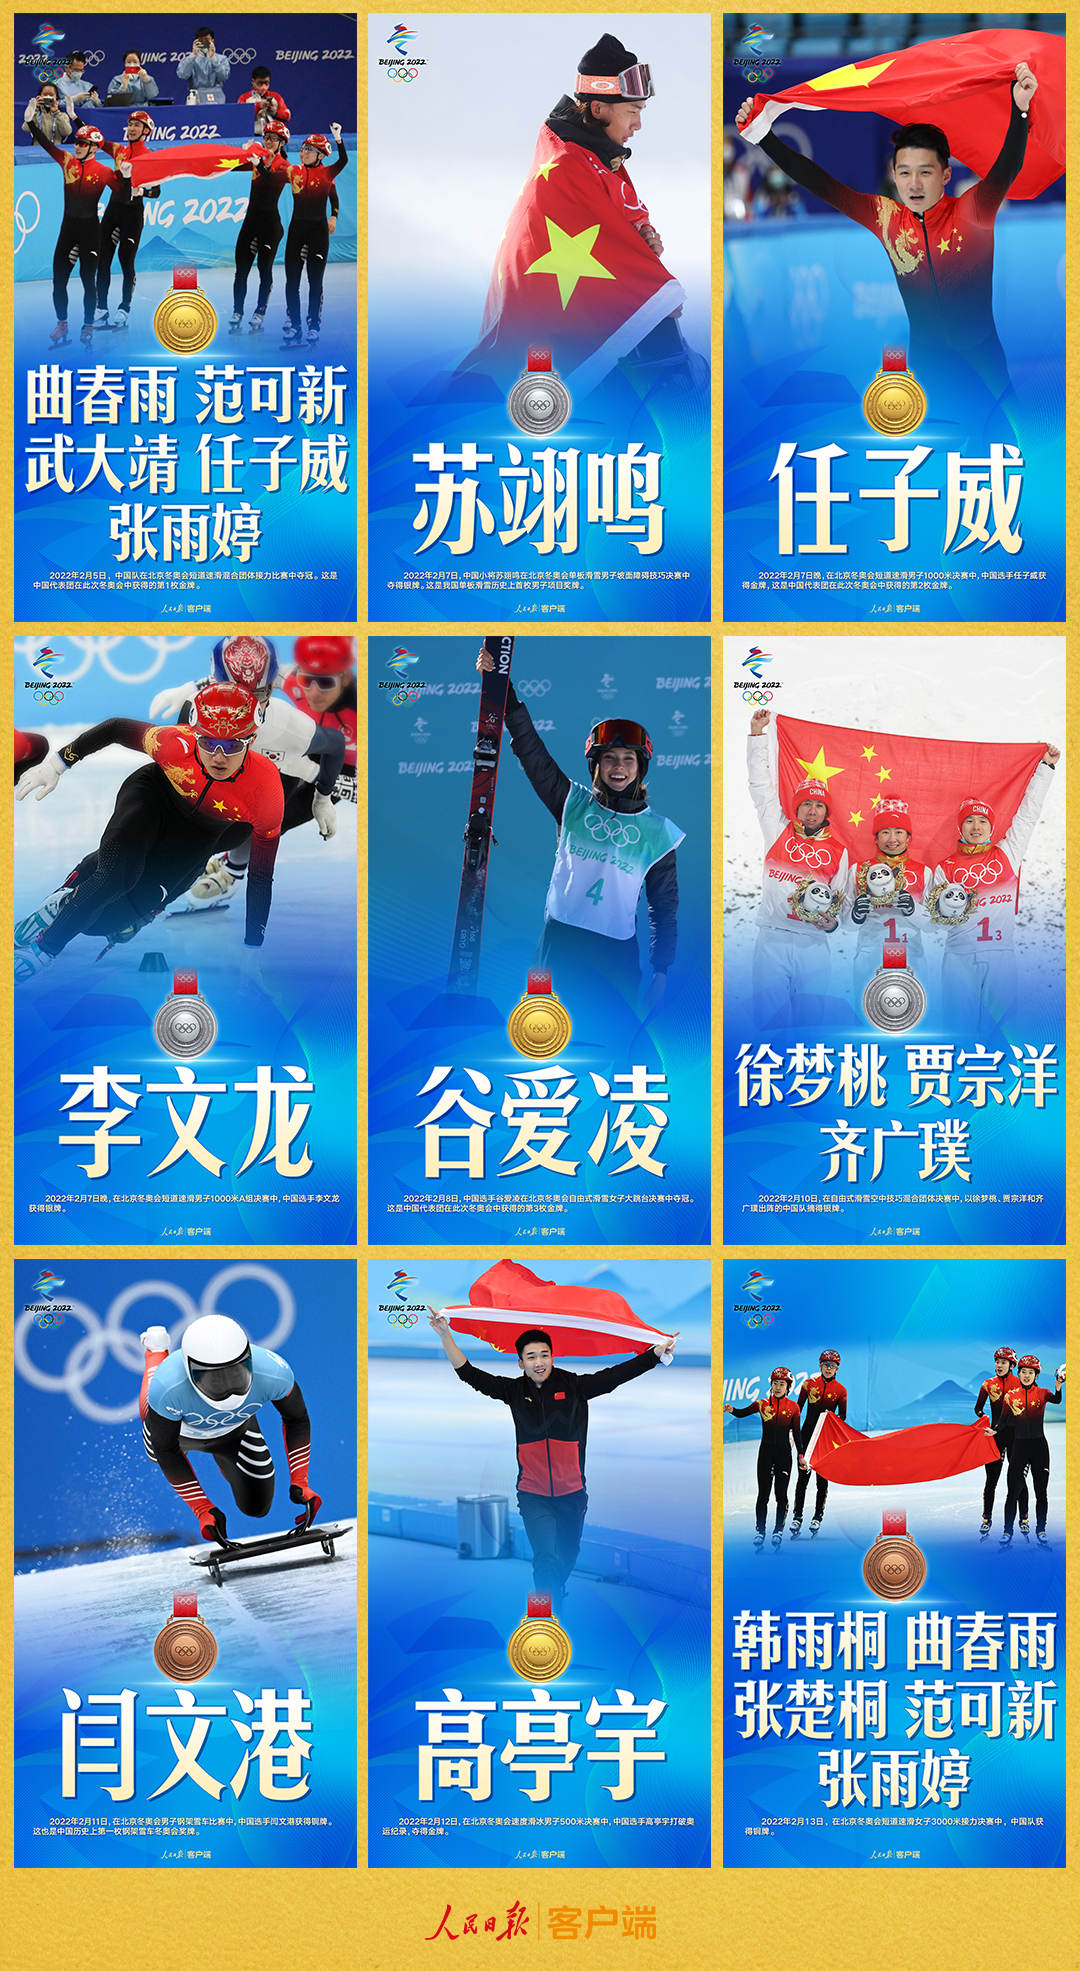 6金4银2铜！中国冬奥代表团金牌数和奖牌数均创历史新高